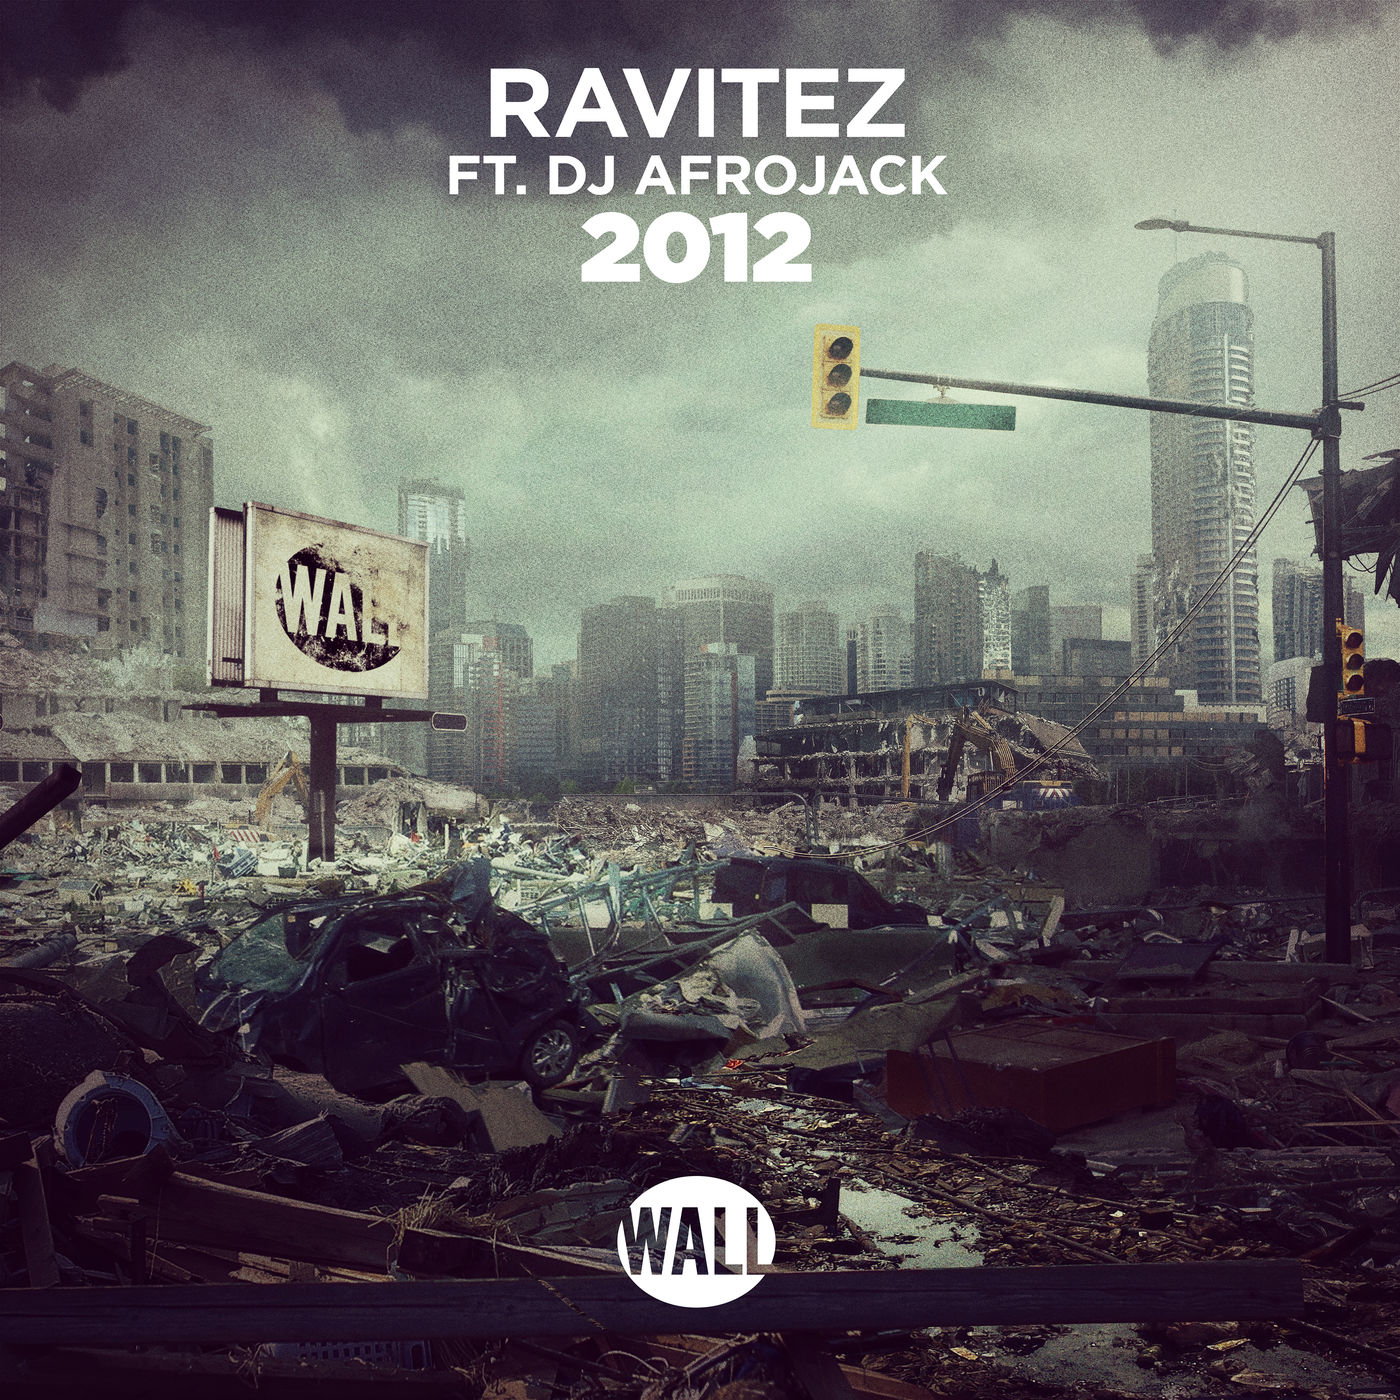  Ravitez FT. DJ Afrojack - 2012.mp3